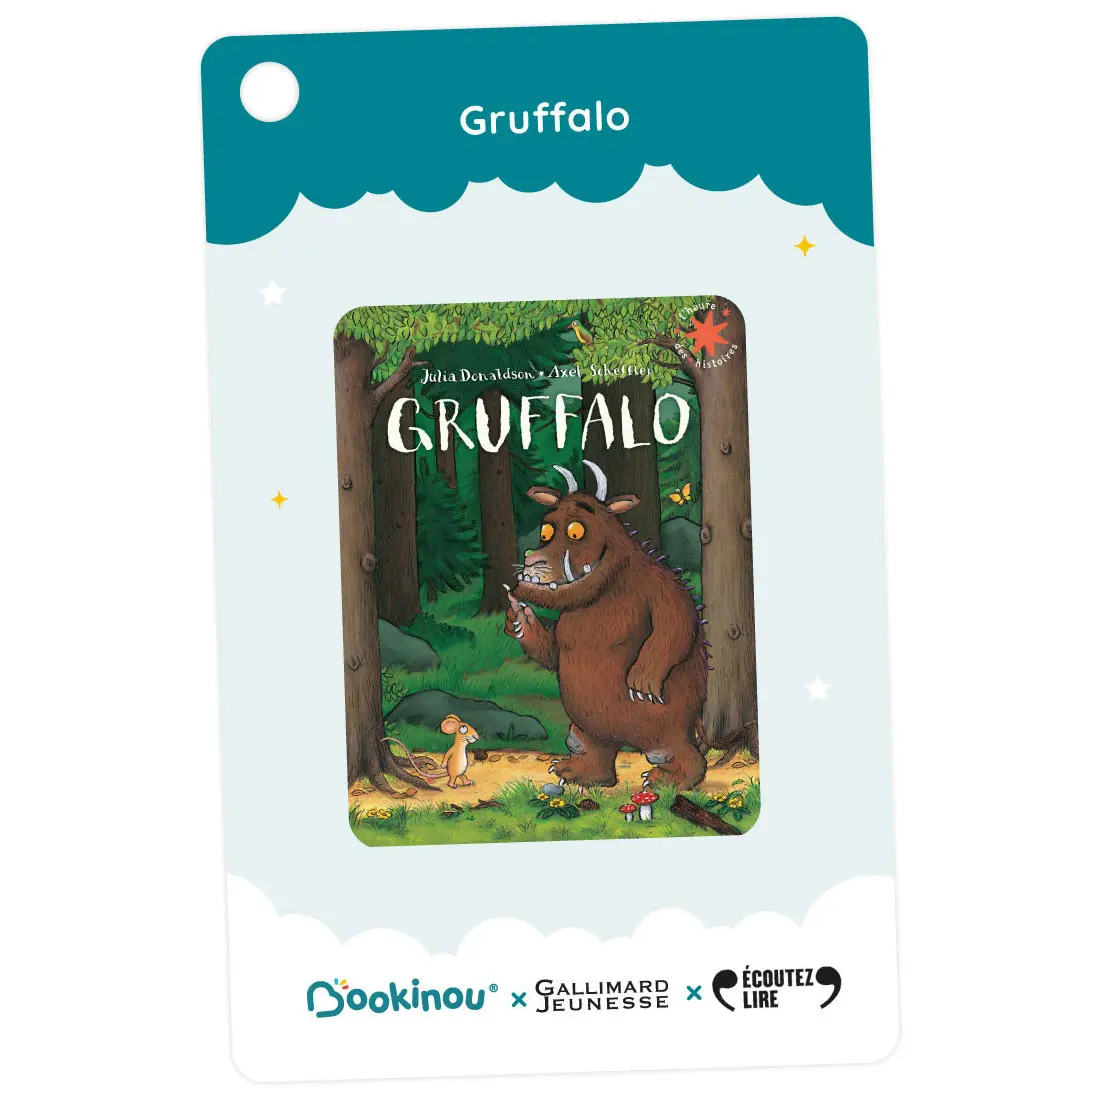 Gruffalo et autres histoires - 3 histoires de Gallimard Jeunesse